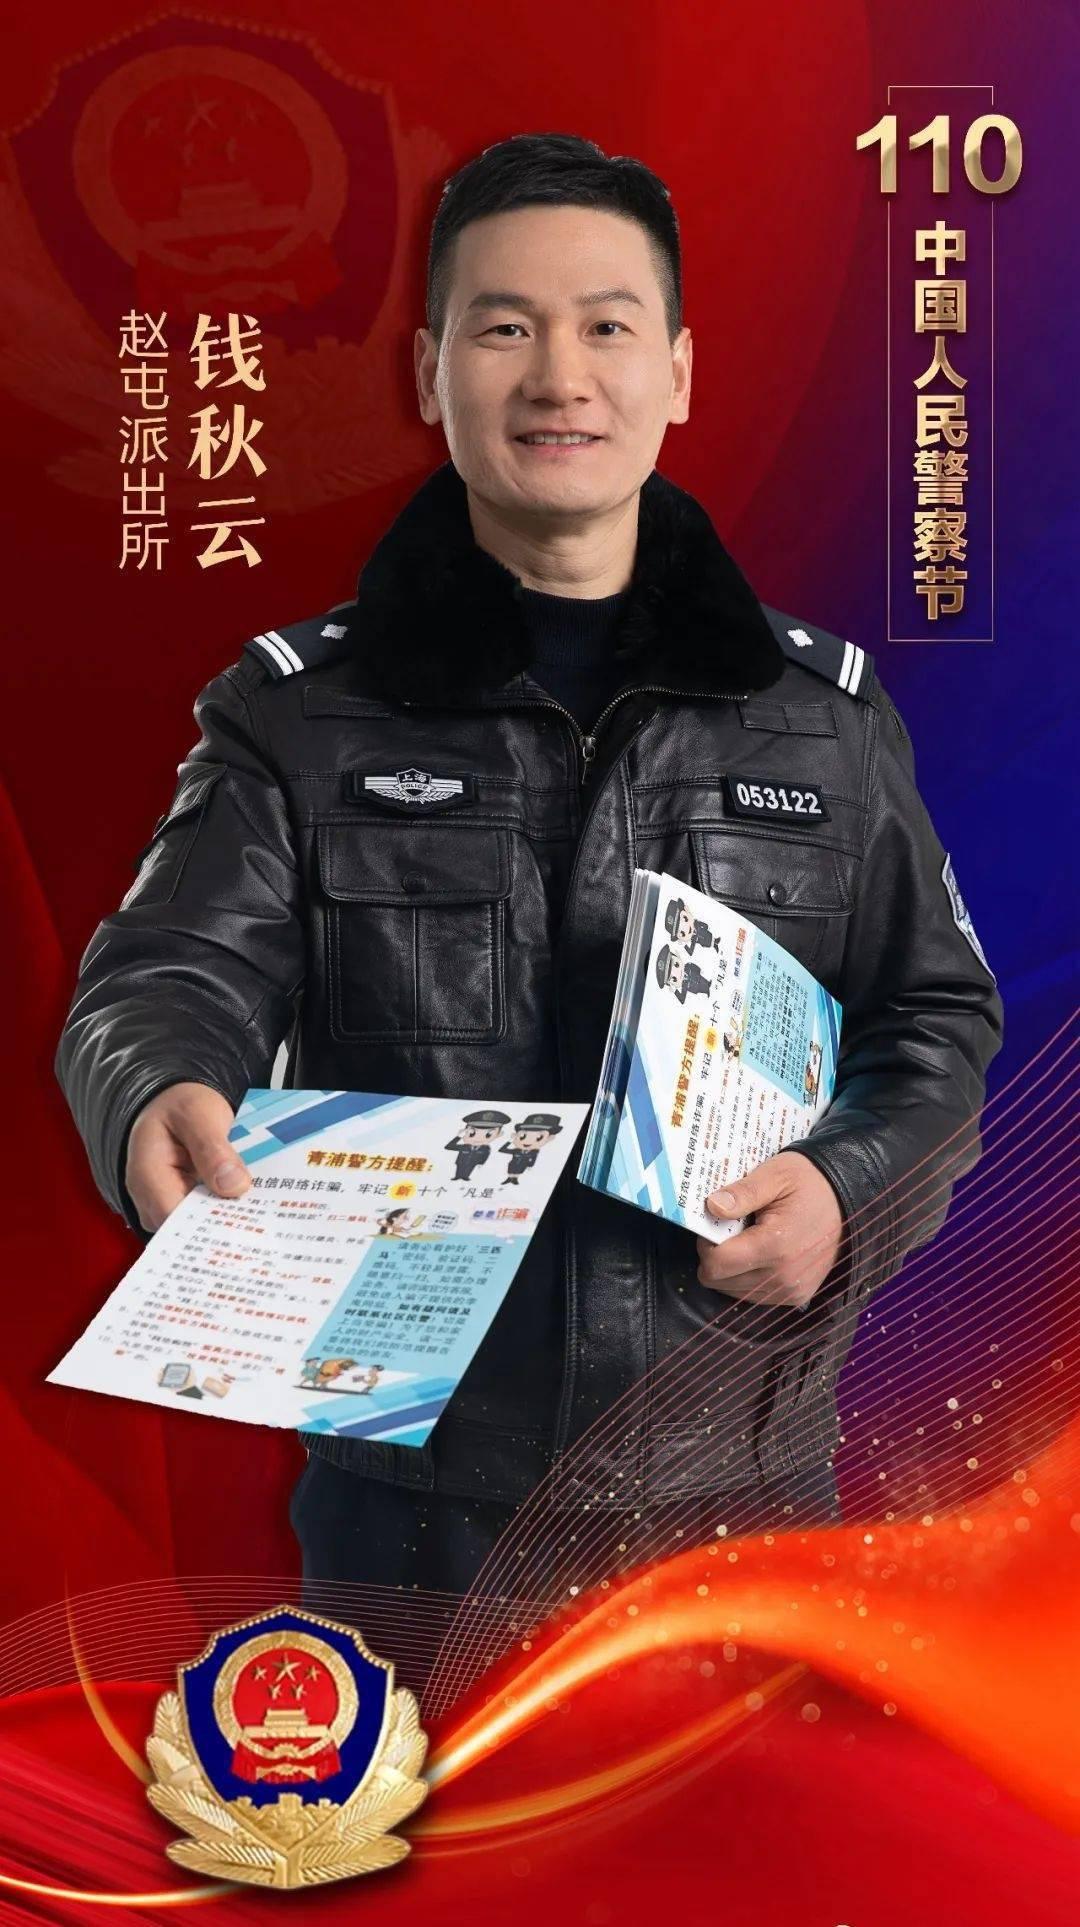 【110宣传日】你好110！致敬中国人民警察节！